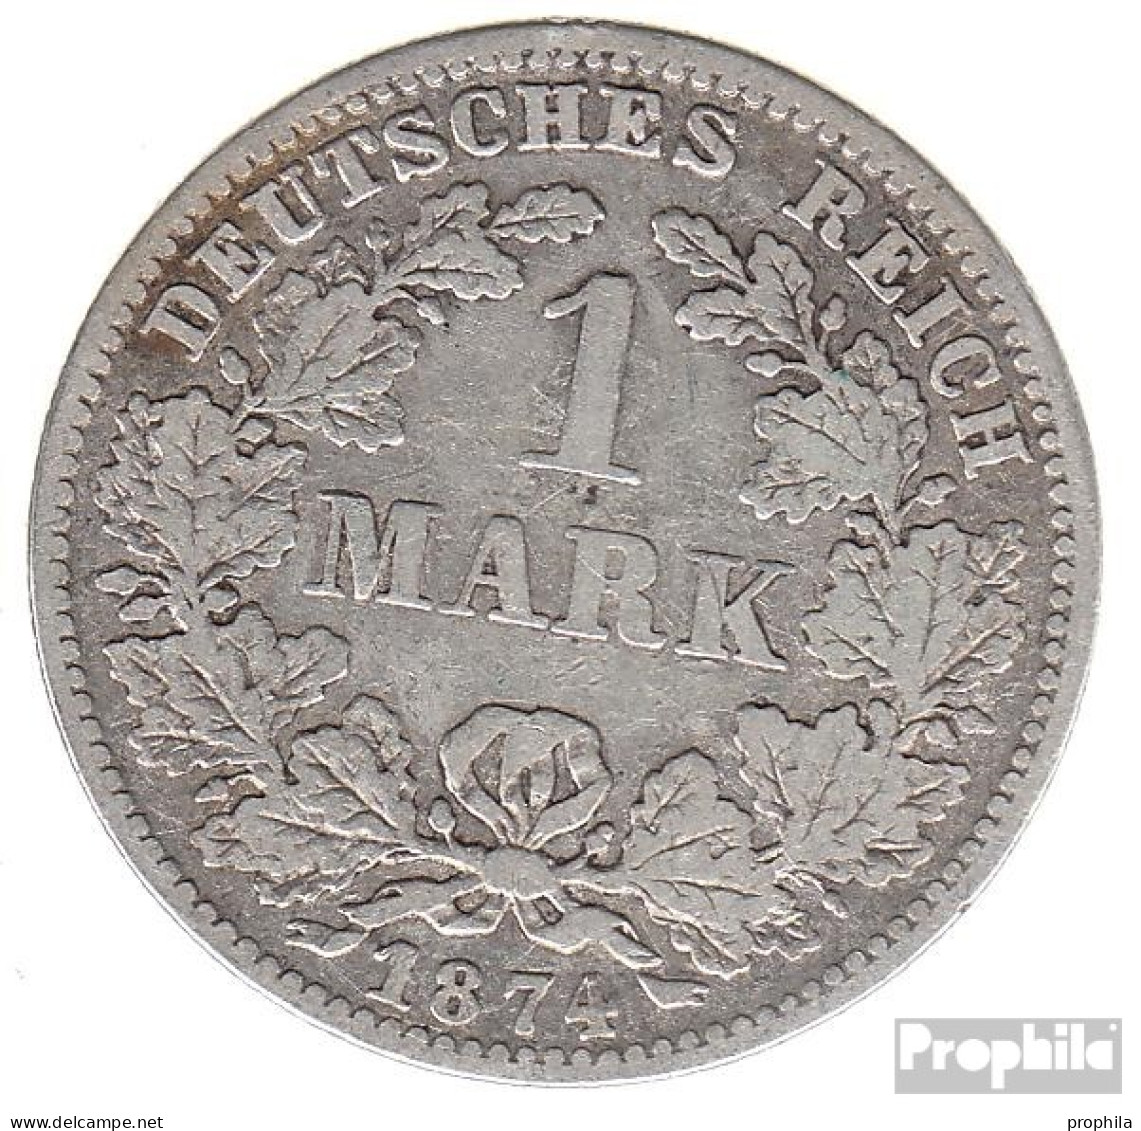 Deutsches Reich Jägernr: 9 1874 C Sehr Schön Silber Sehr Schön 1874 1 Mark Kleiner Reichsadler - 1 Mark